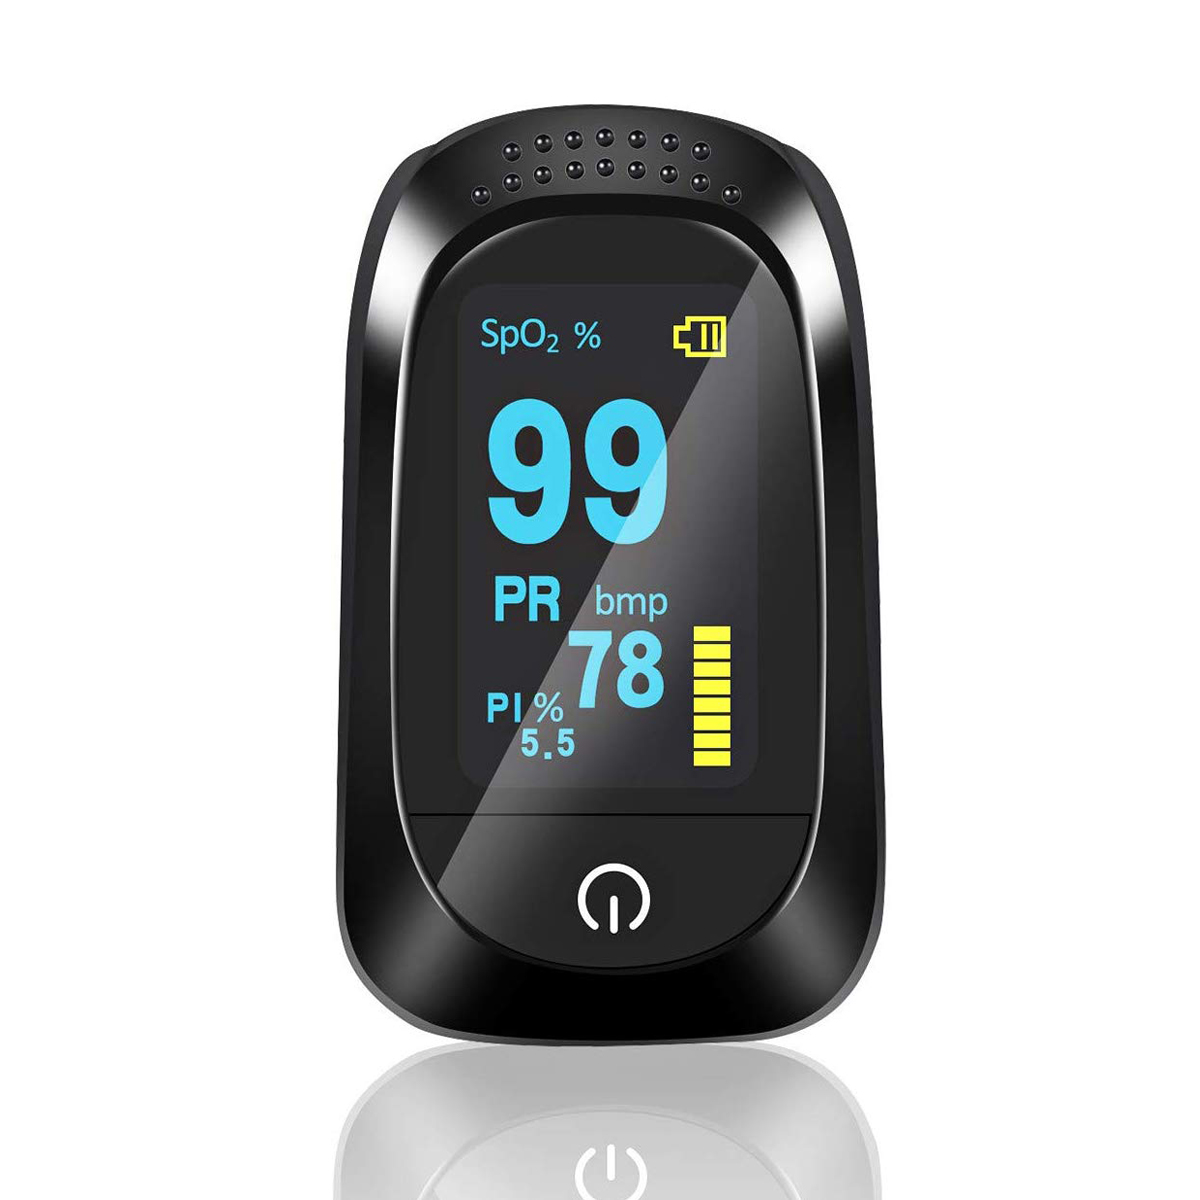 

Портативный пульсоксиметр OLED Home Detection Finger Tip Оксиметр Мониторинг сна Сердце Частота PI для Для взрослых и детей с пульсоксиметром SpO2